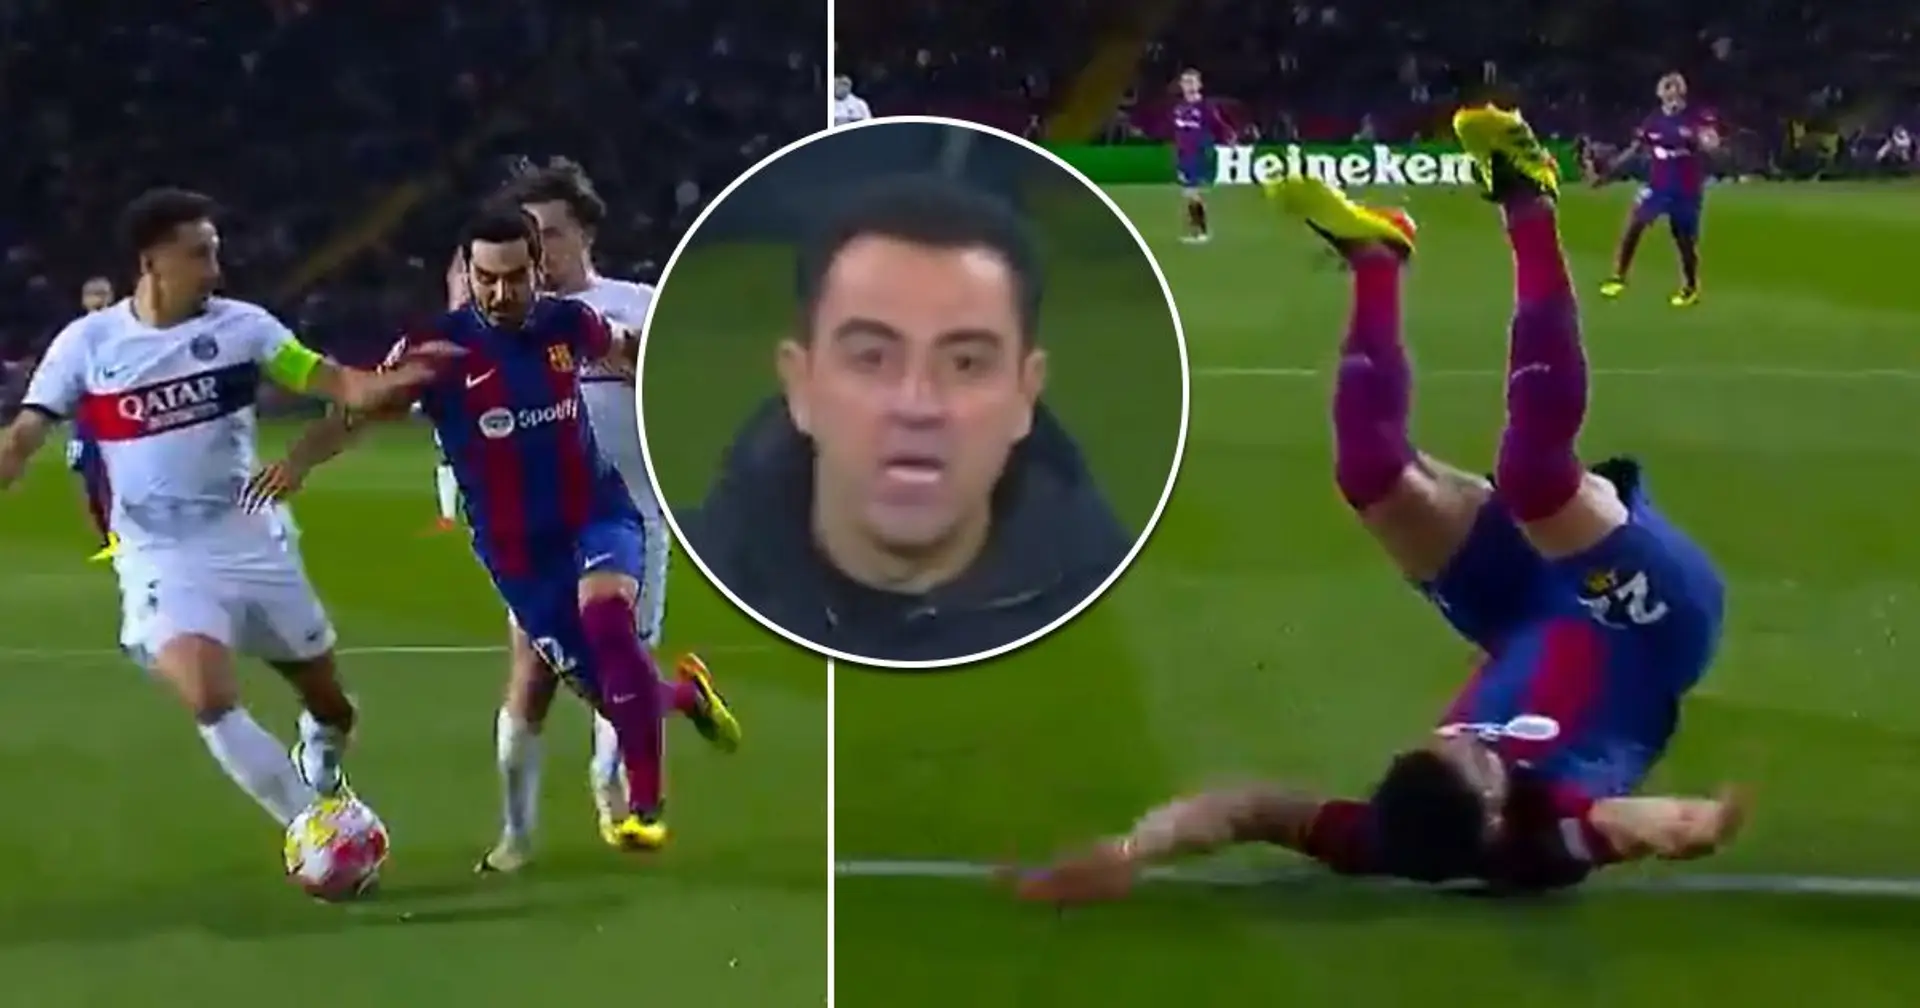 Al Barça se le negó penalti claro ante el PSG: Gundogan recibe una tarjeta amarilla en lugar de un penalti